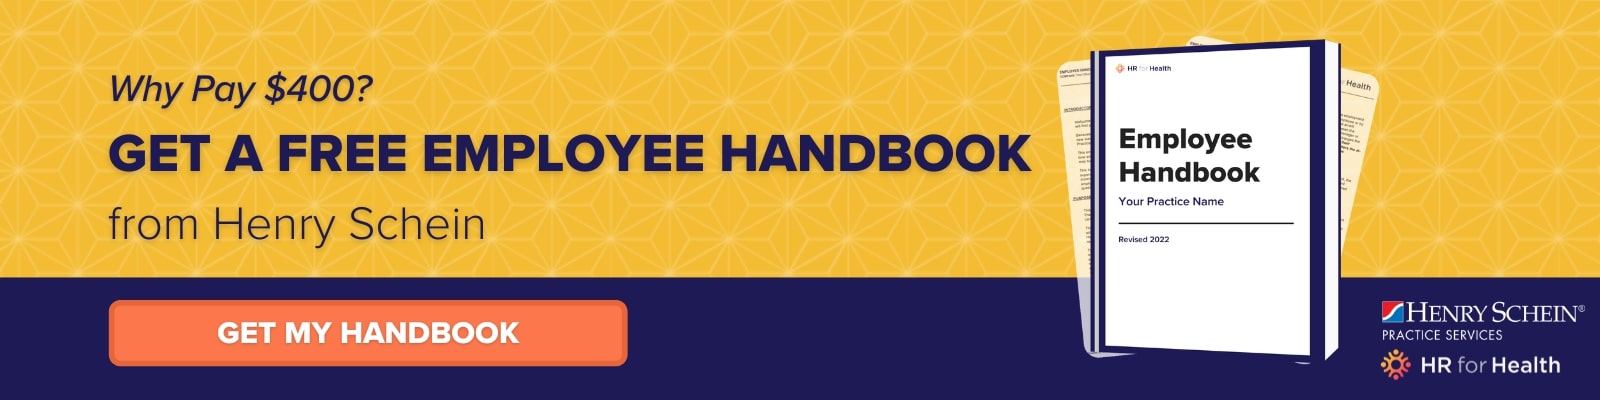 Get a Free Employee Handbook from Henry Schein